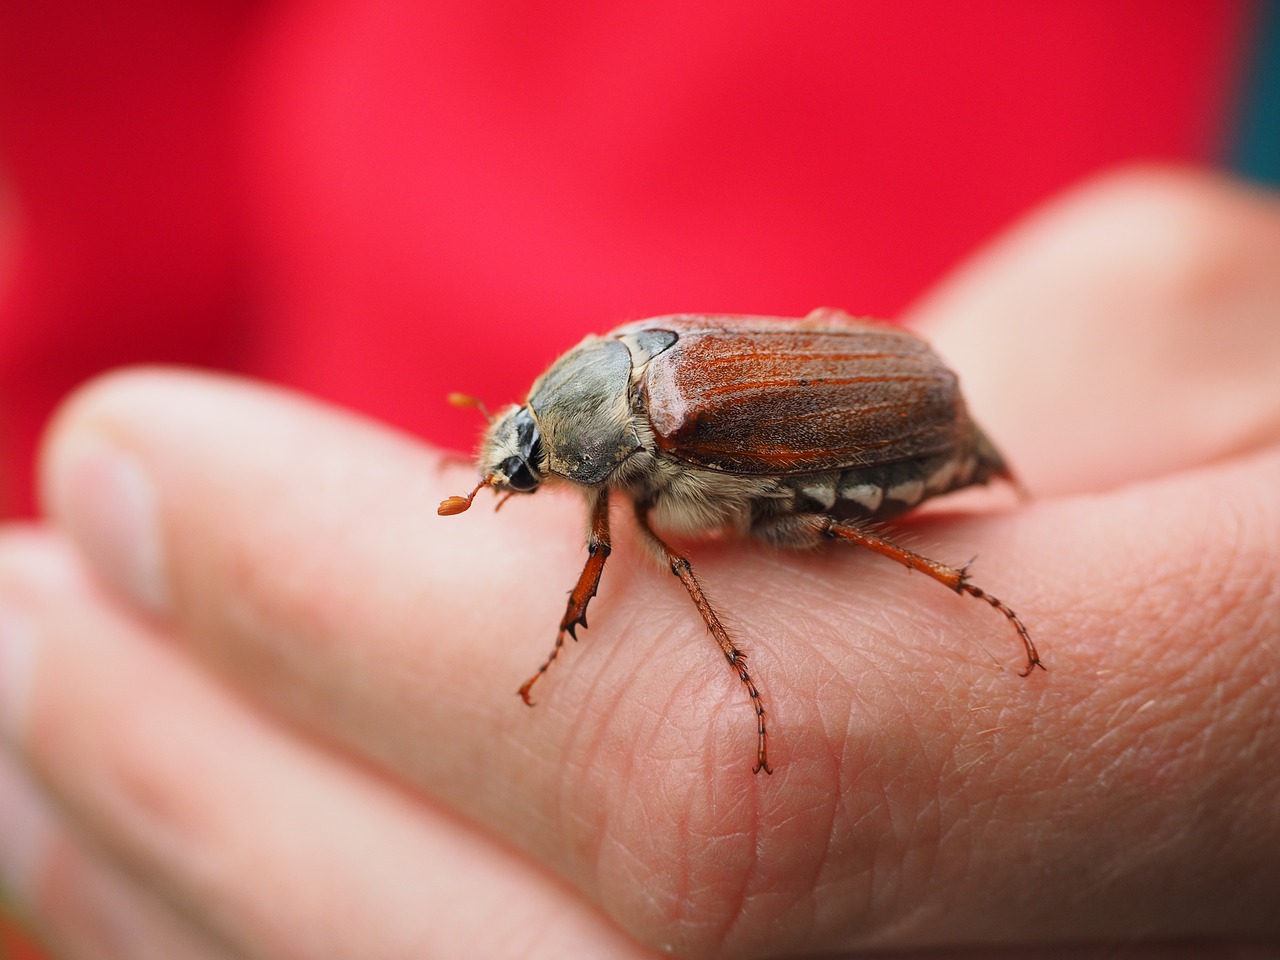 maikäfer beetle animal free photo